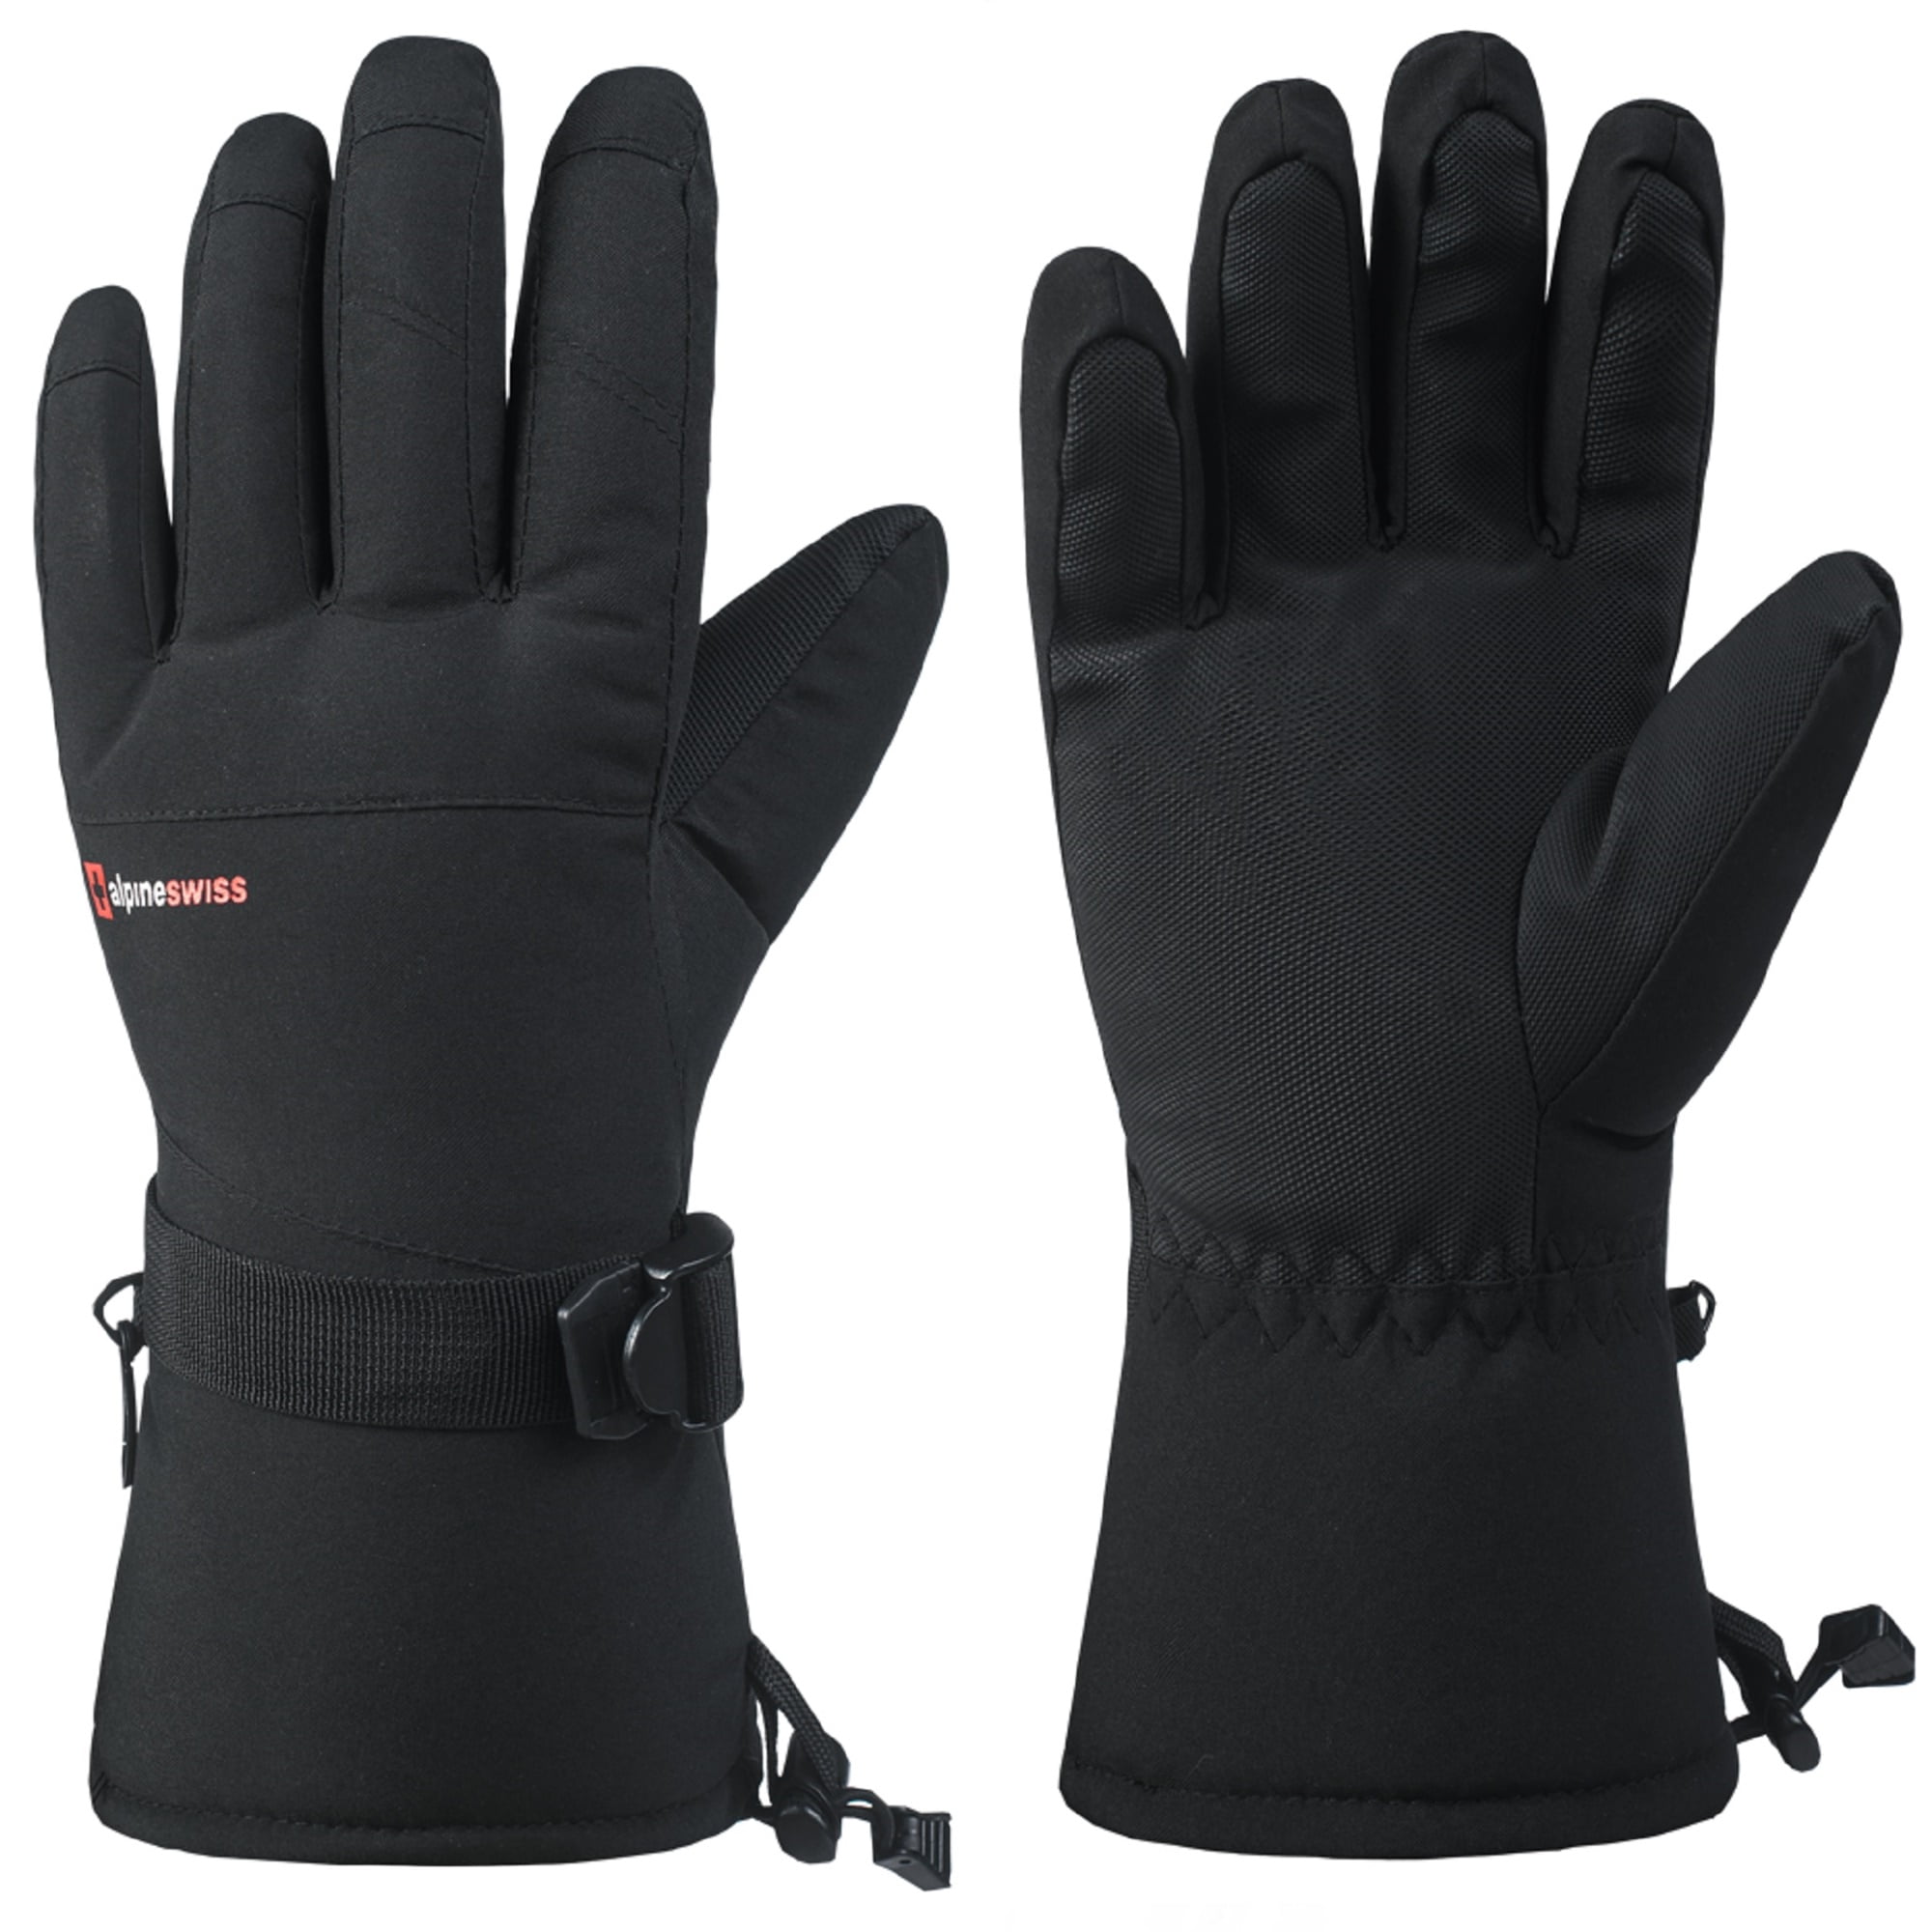 Mens Womens Adjustable Winter Warm Thermal Waterproof Ski Snowboarding Gloves 